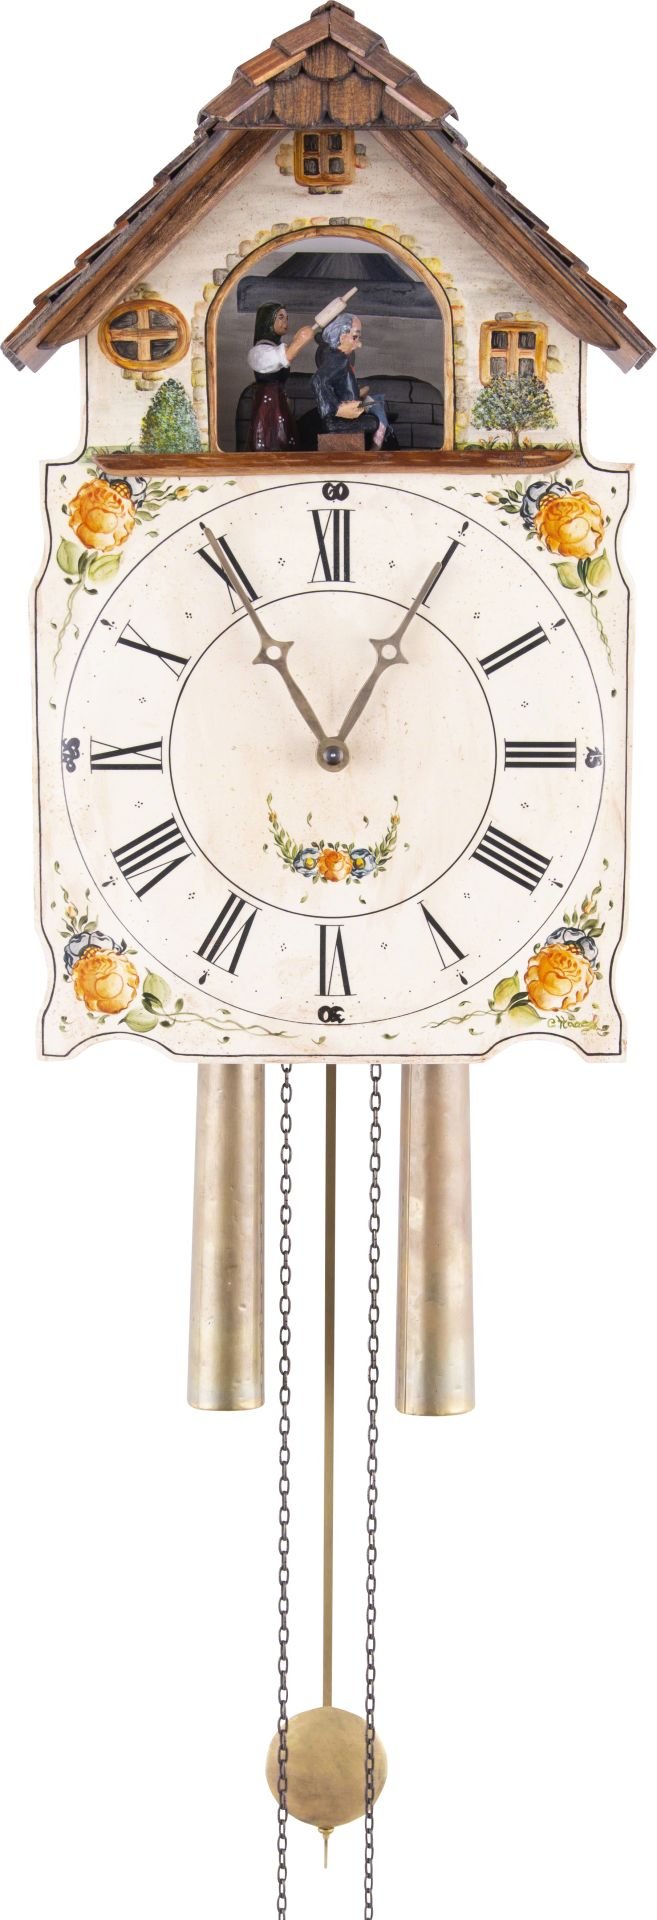 Reloj de cuco con fachada pintada movimiento mecánico de 8 días 40cm de Rombach & Haas